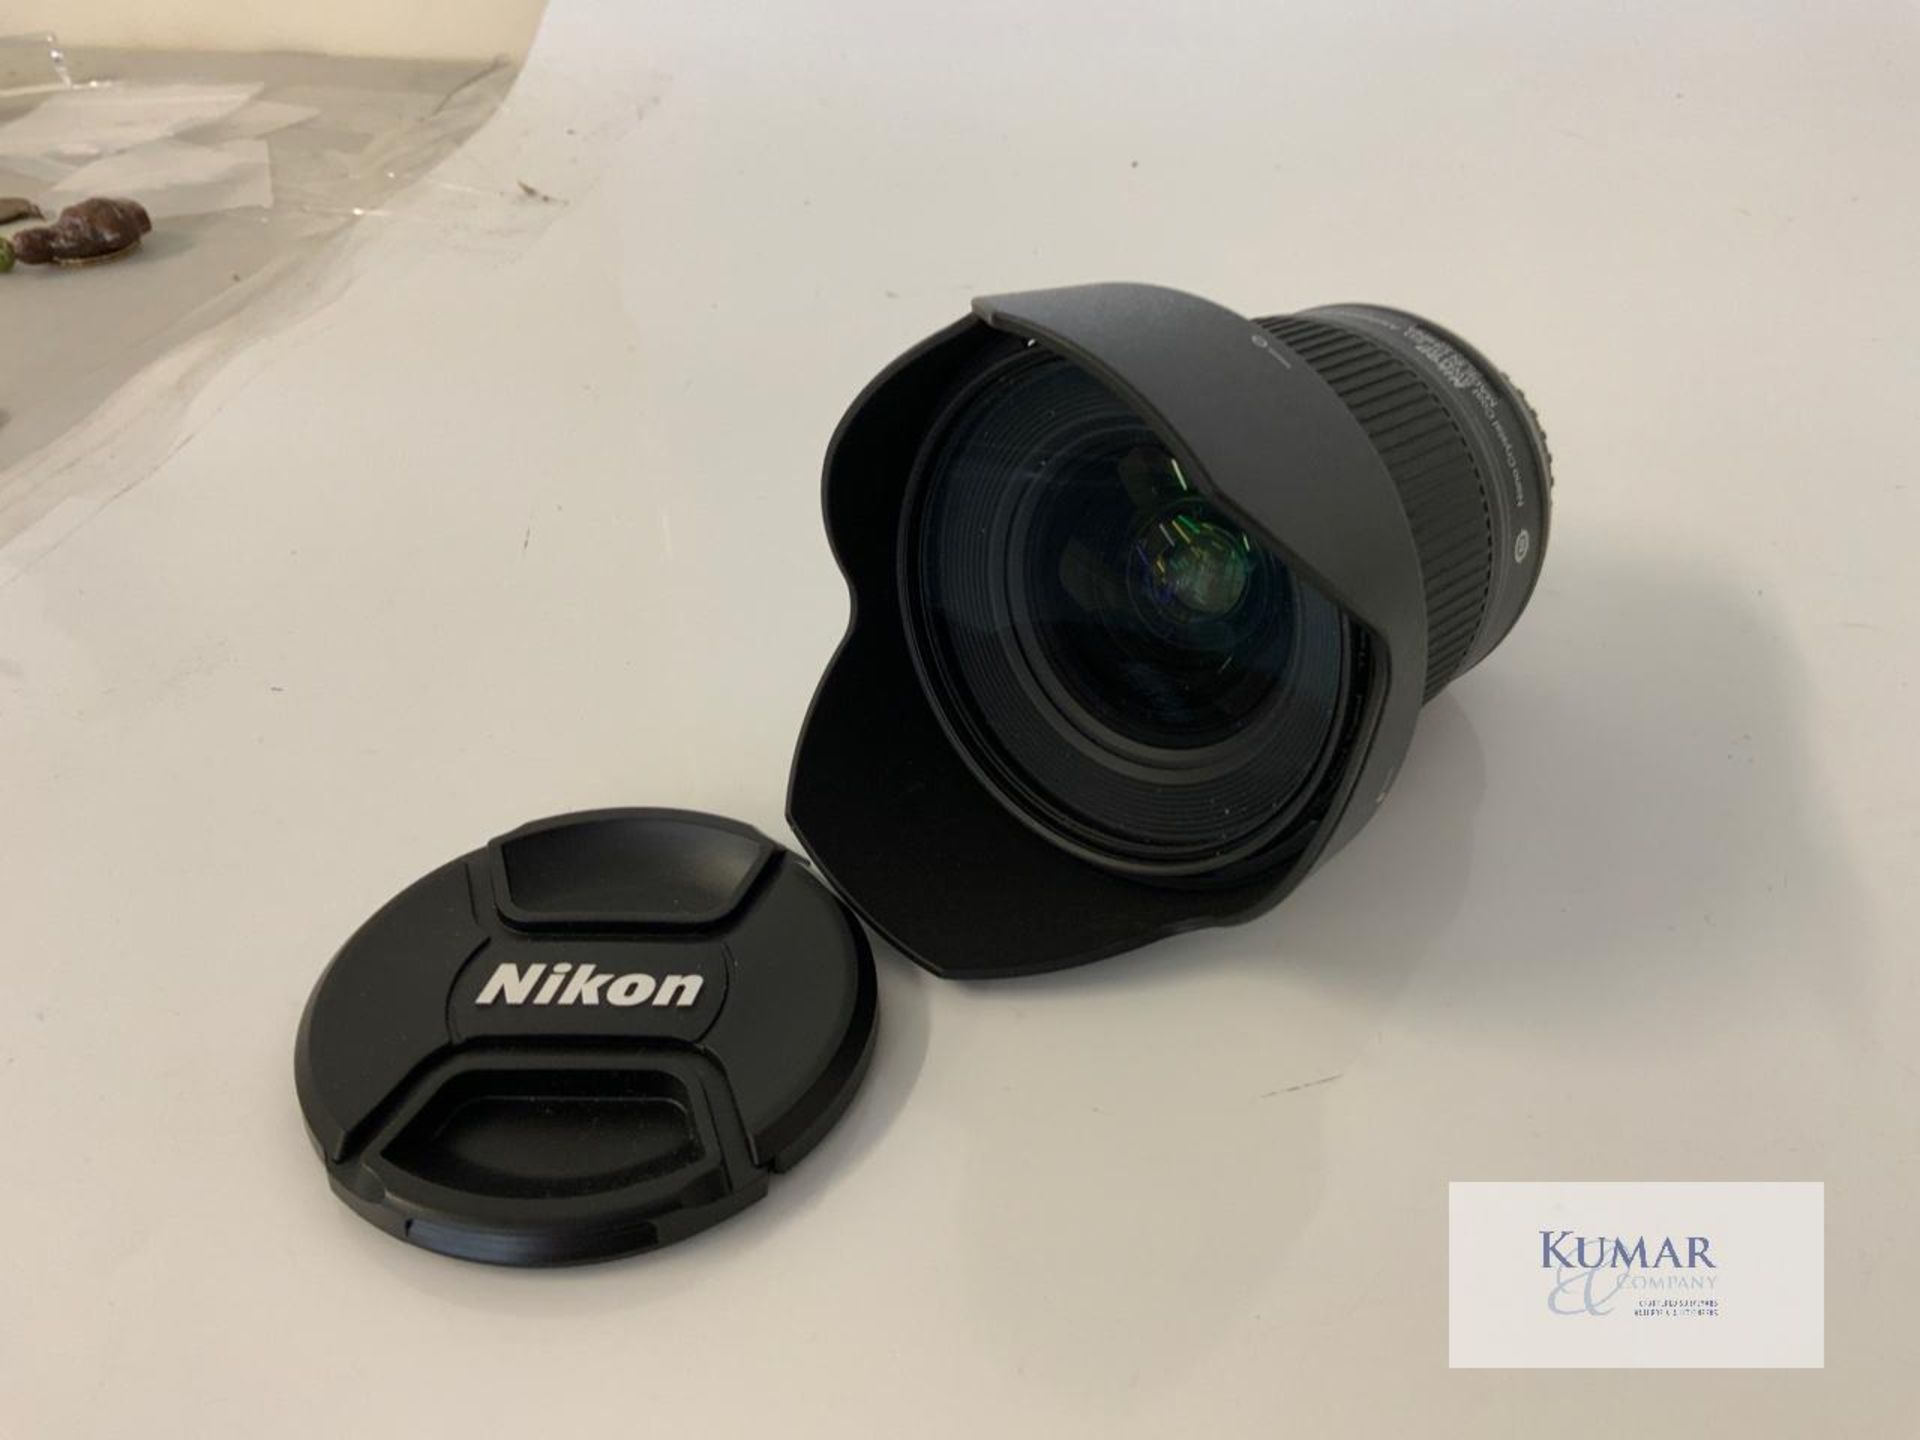 Nikon AF-S Nikkor 20mm 1:1.8G ED Zoom Lens with Nikon HB 72 Lens Hood & Carry Case - Image 8 of 10